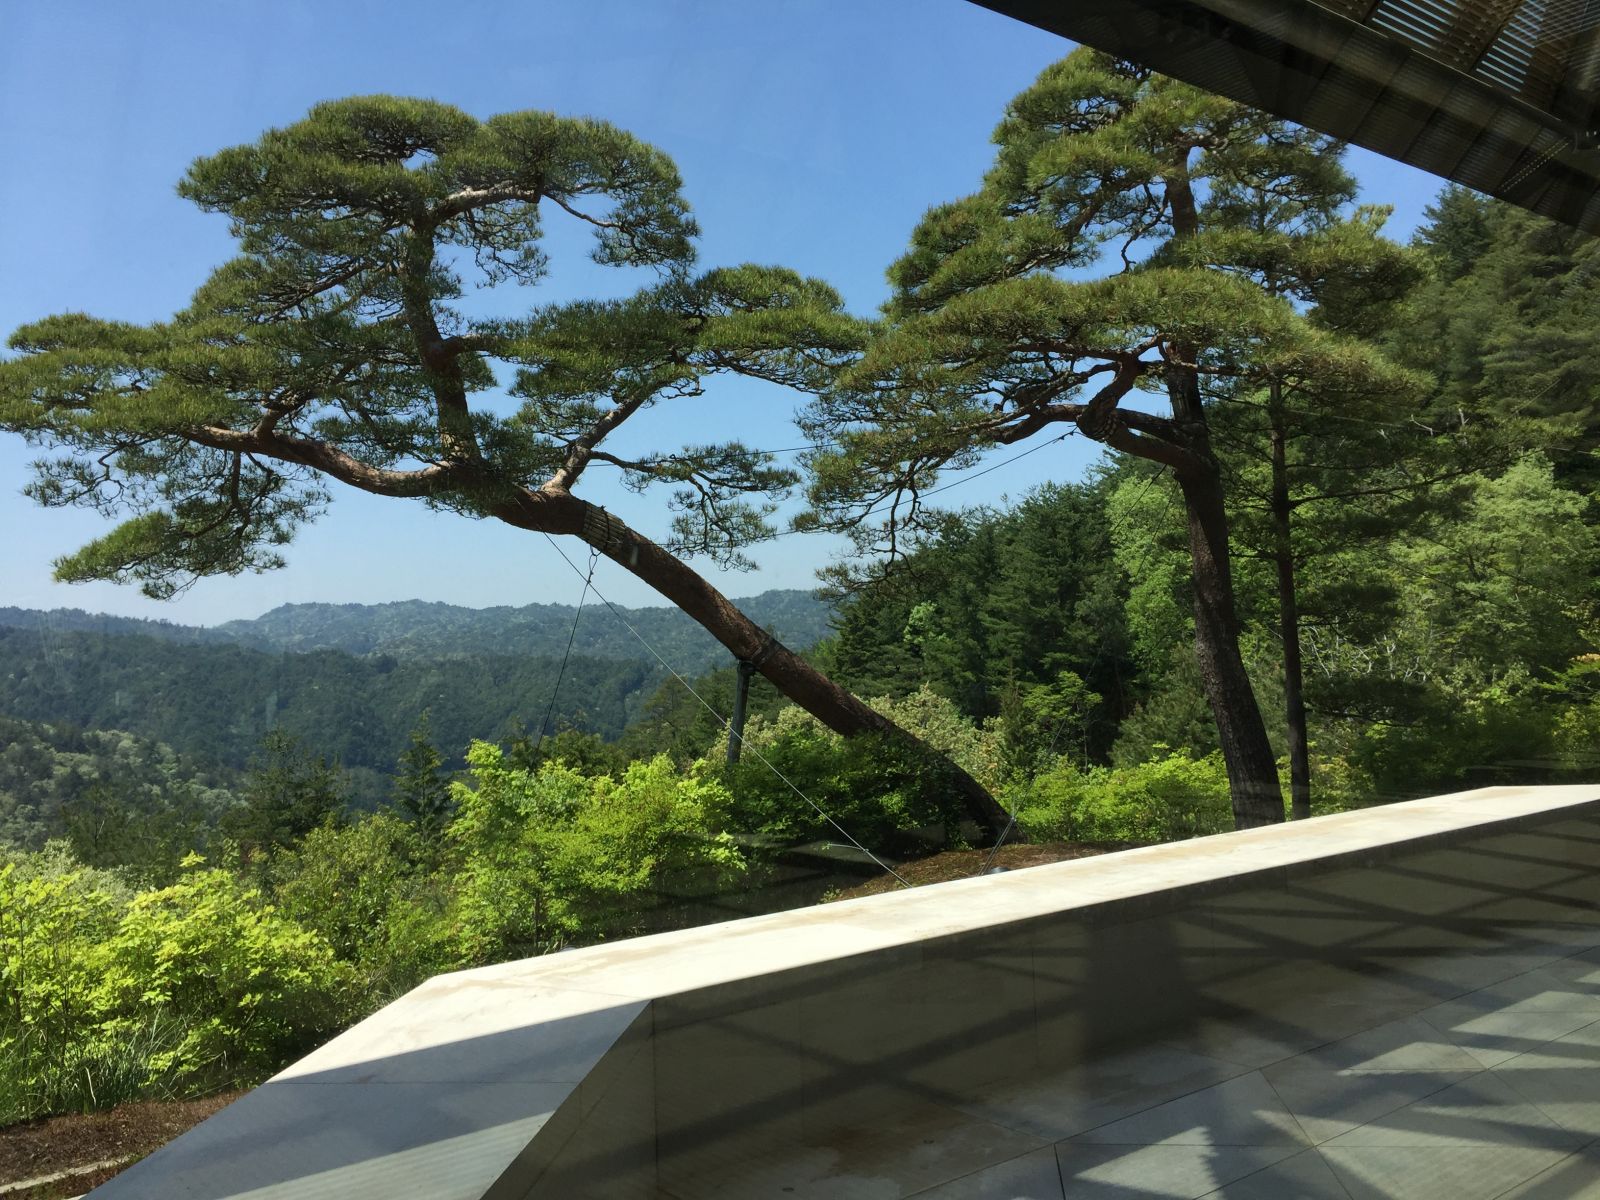 感受日本现代景观和知名建筑 对话禅僧大师枡野俊明